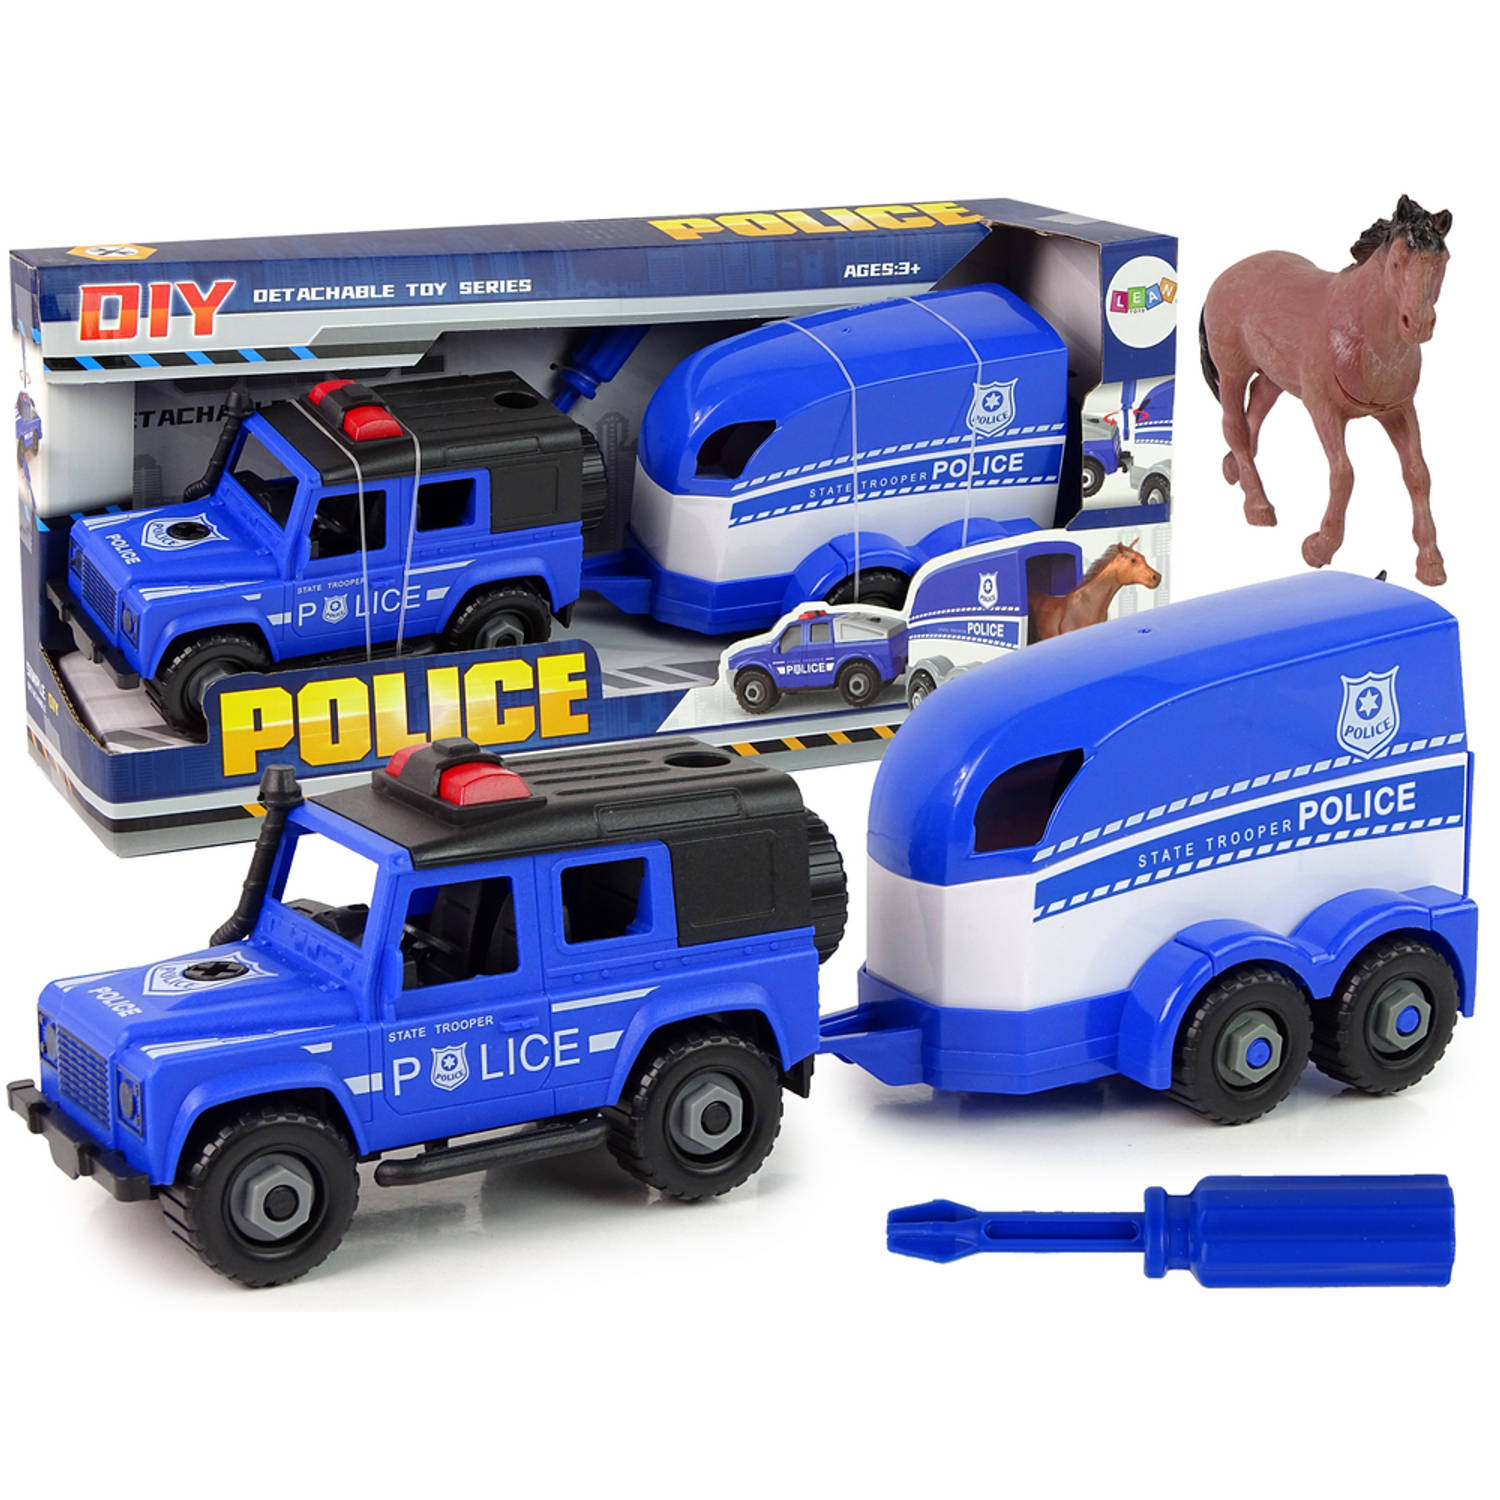 DIY Speelgoed politie terreinwagen met trailer en paard - Trailer is los te koppelen - Vanaf 3 jaar - Speelgoedwagen